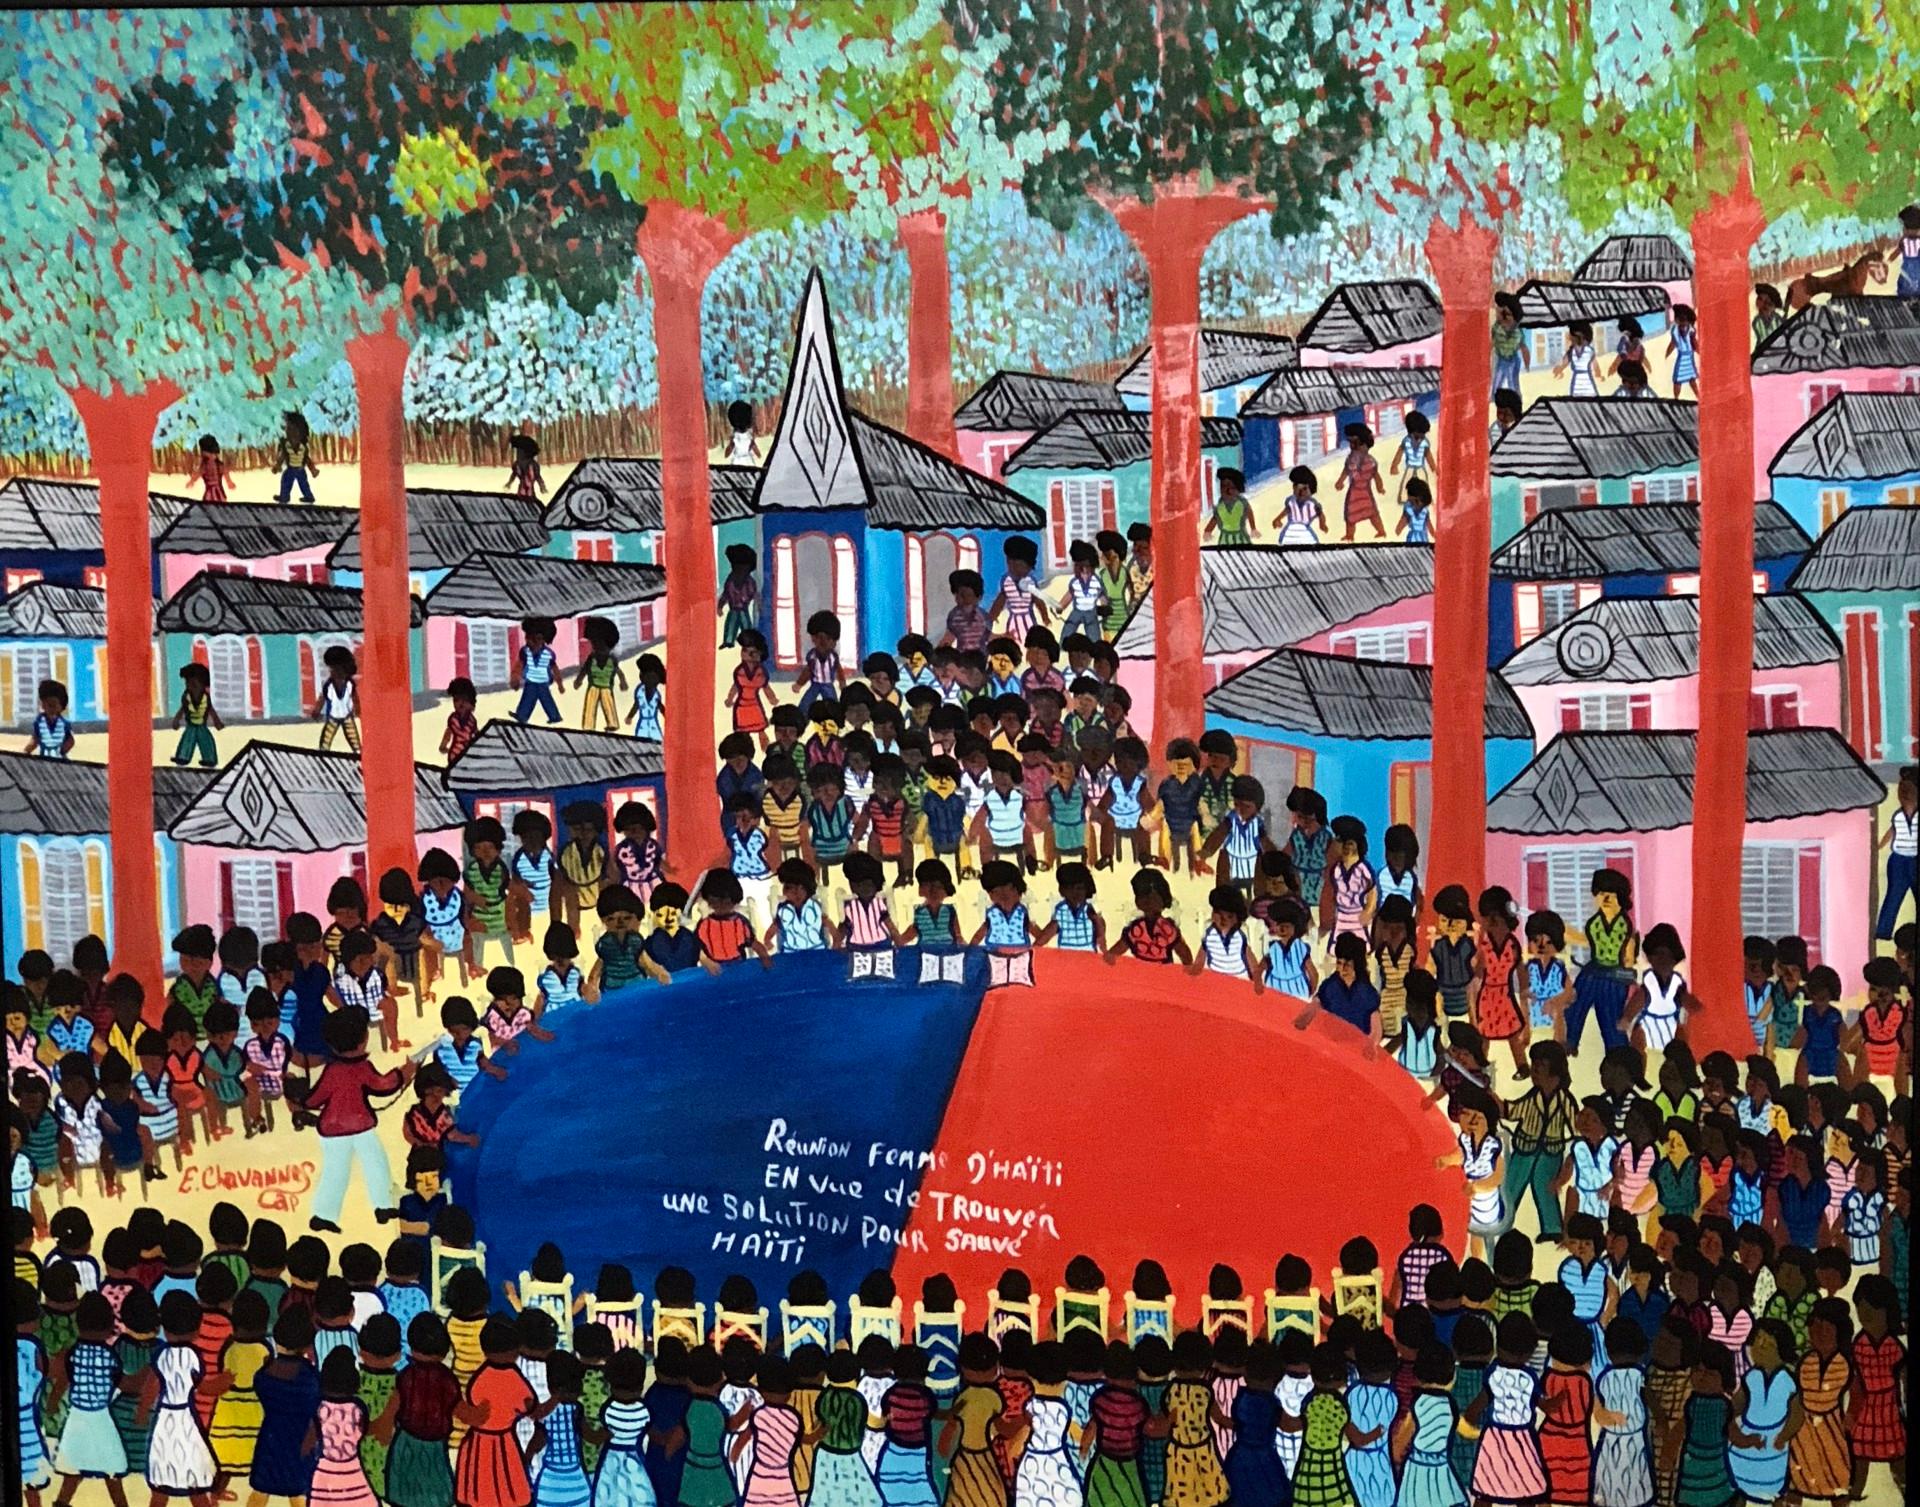 Reunion Femme d'Haiti en Vue de Trouver Une Solution Pour Sauver Haiti #1MFN - Art by Etienne Chavannes (Haitian, 1939-2018)